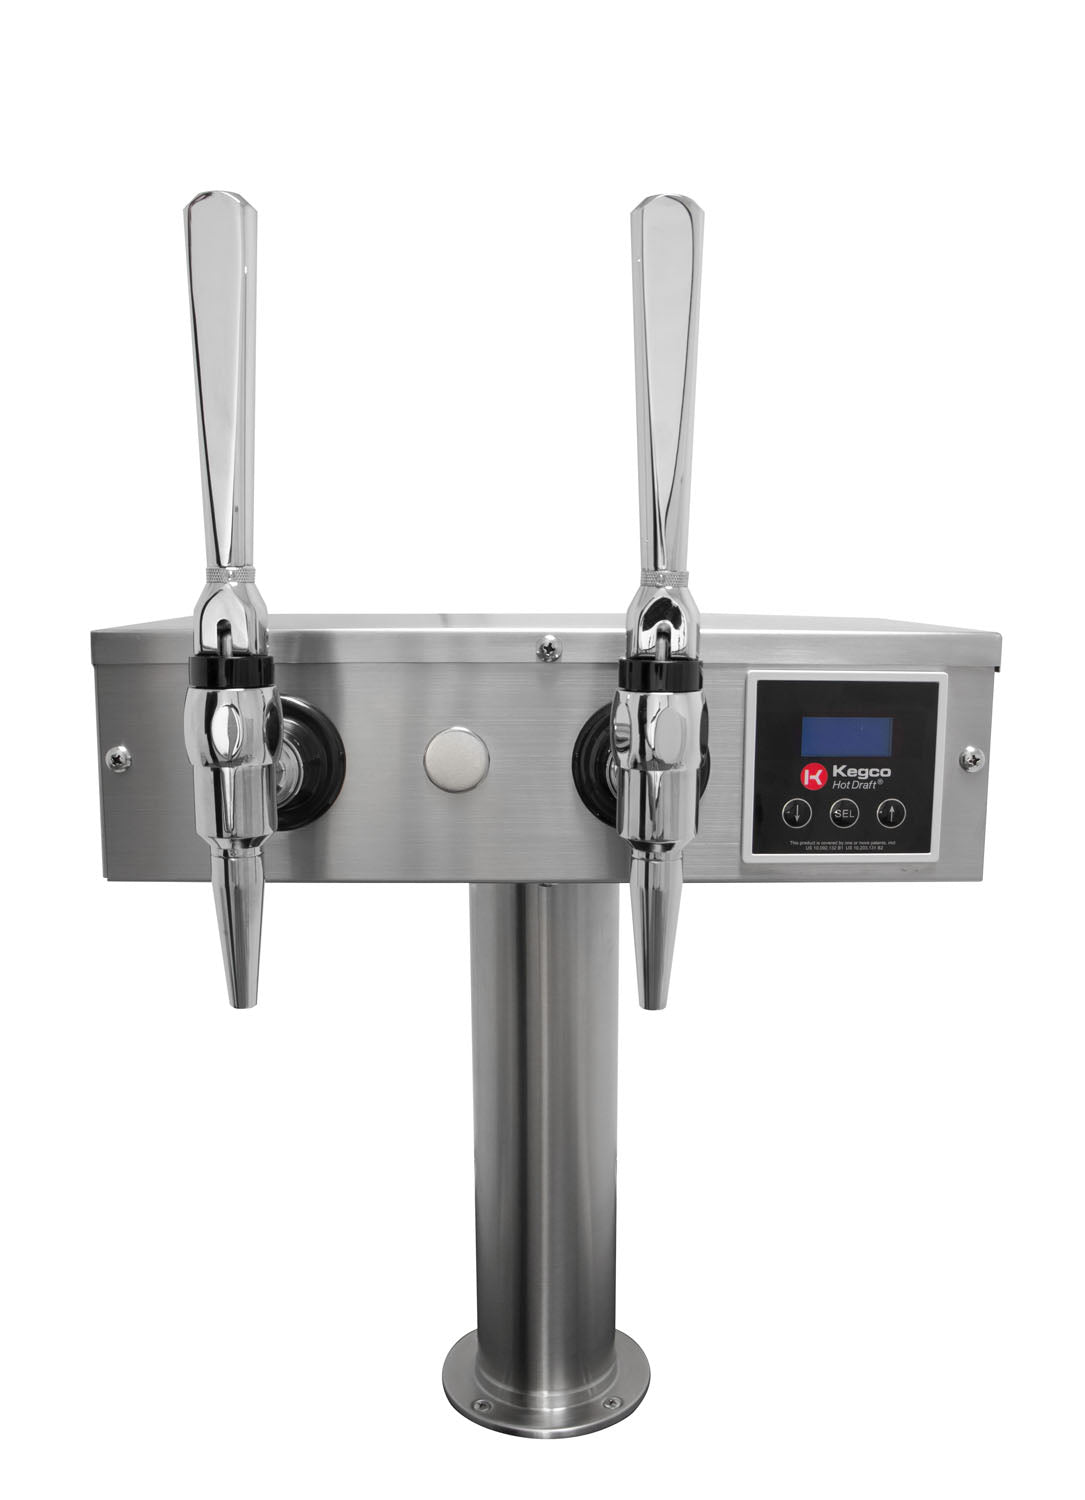 Kegco Z163-HDT-3S Triple Faucet Digital Hot Draft Tap Coffee Keg Dispenser - Stainless Steel